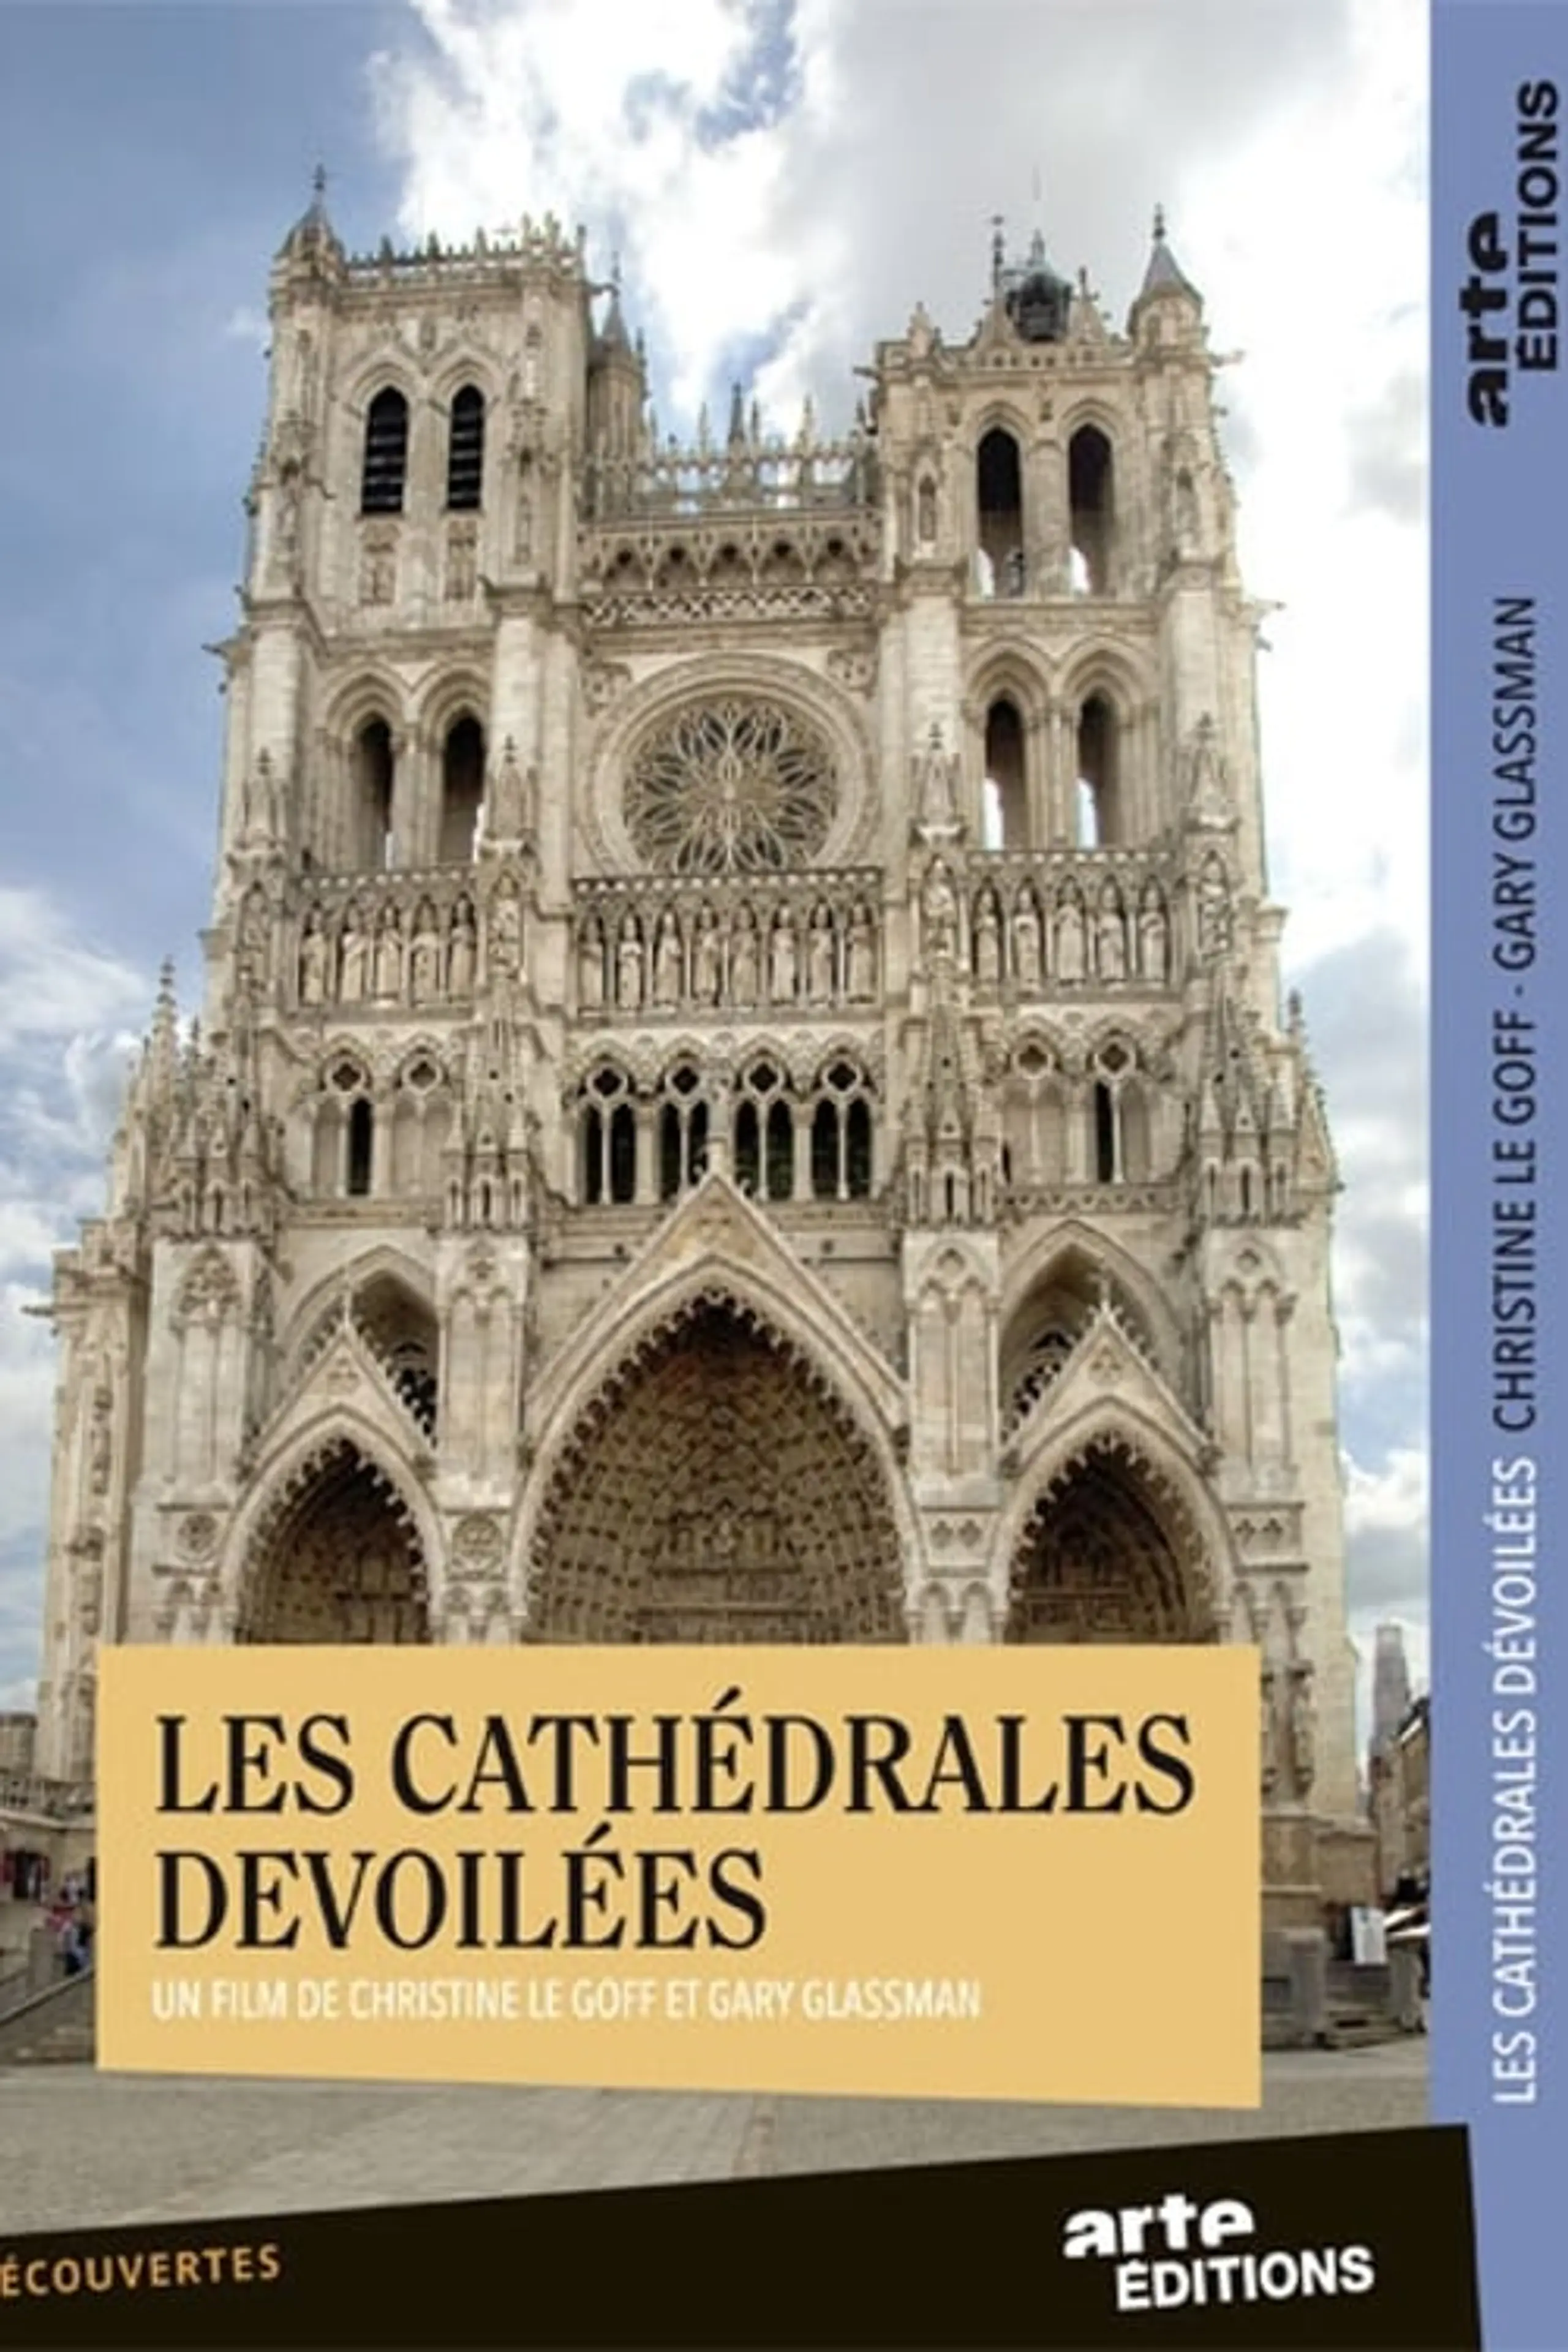 Kathedralen - Wunderwerke der Gotik